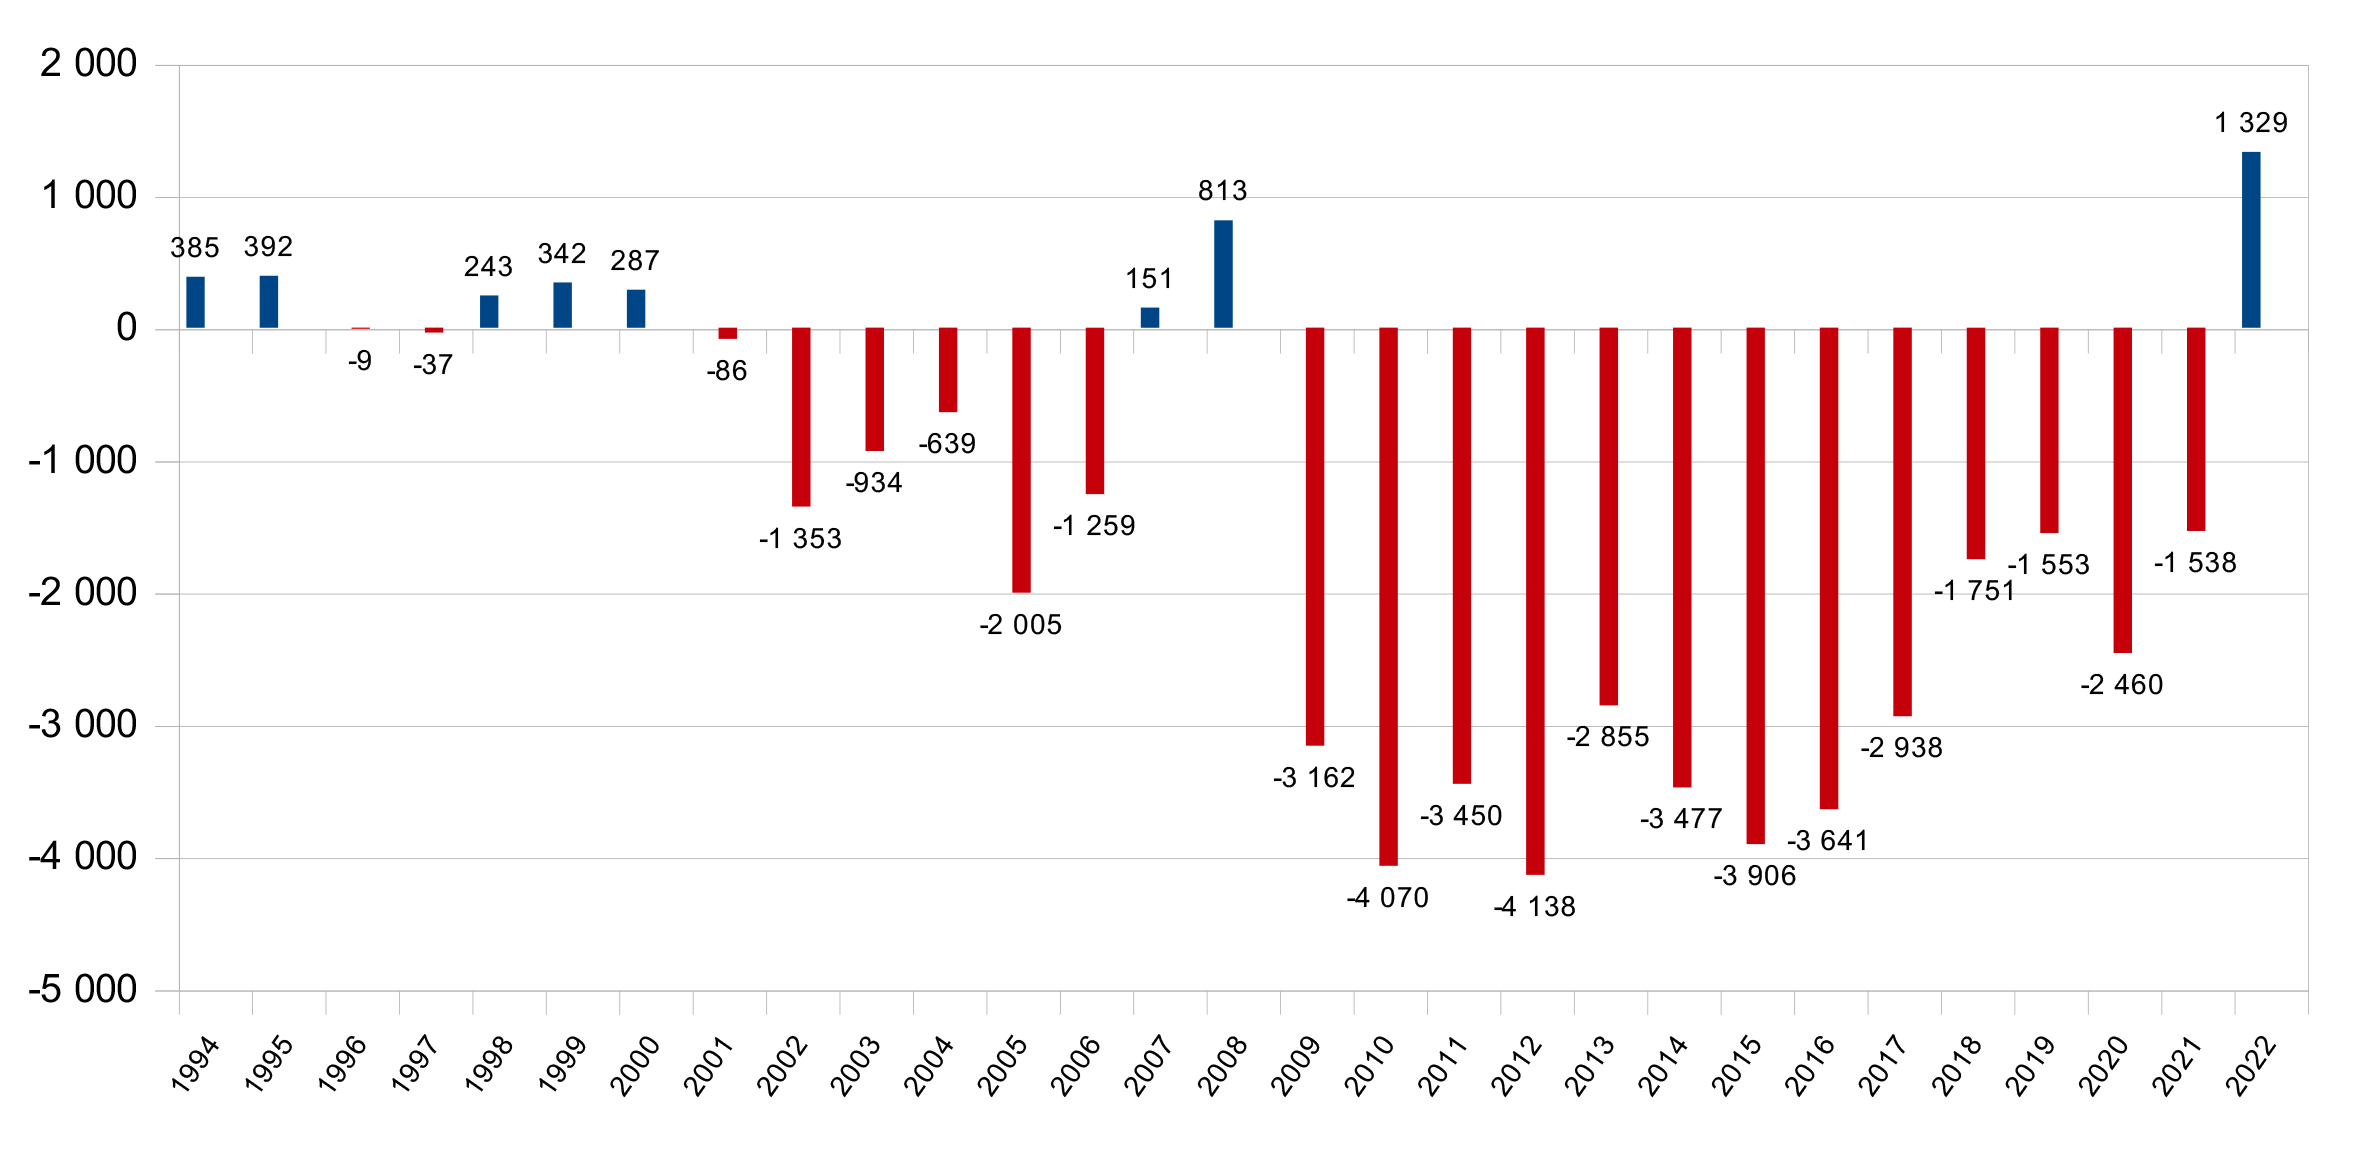 Résultats annuels du FSV de 1994 à 2022